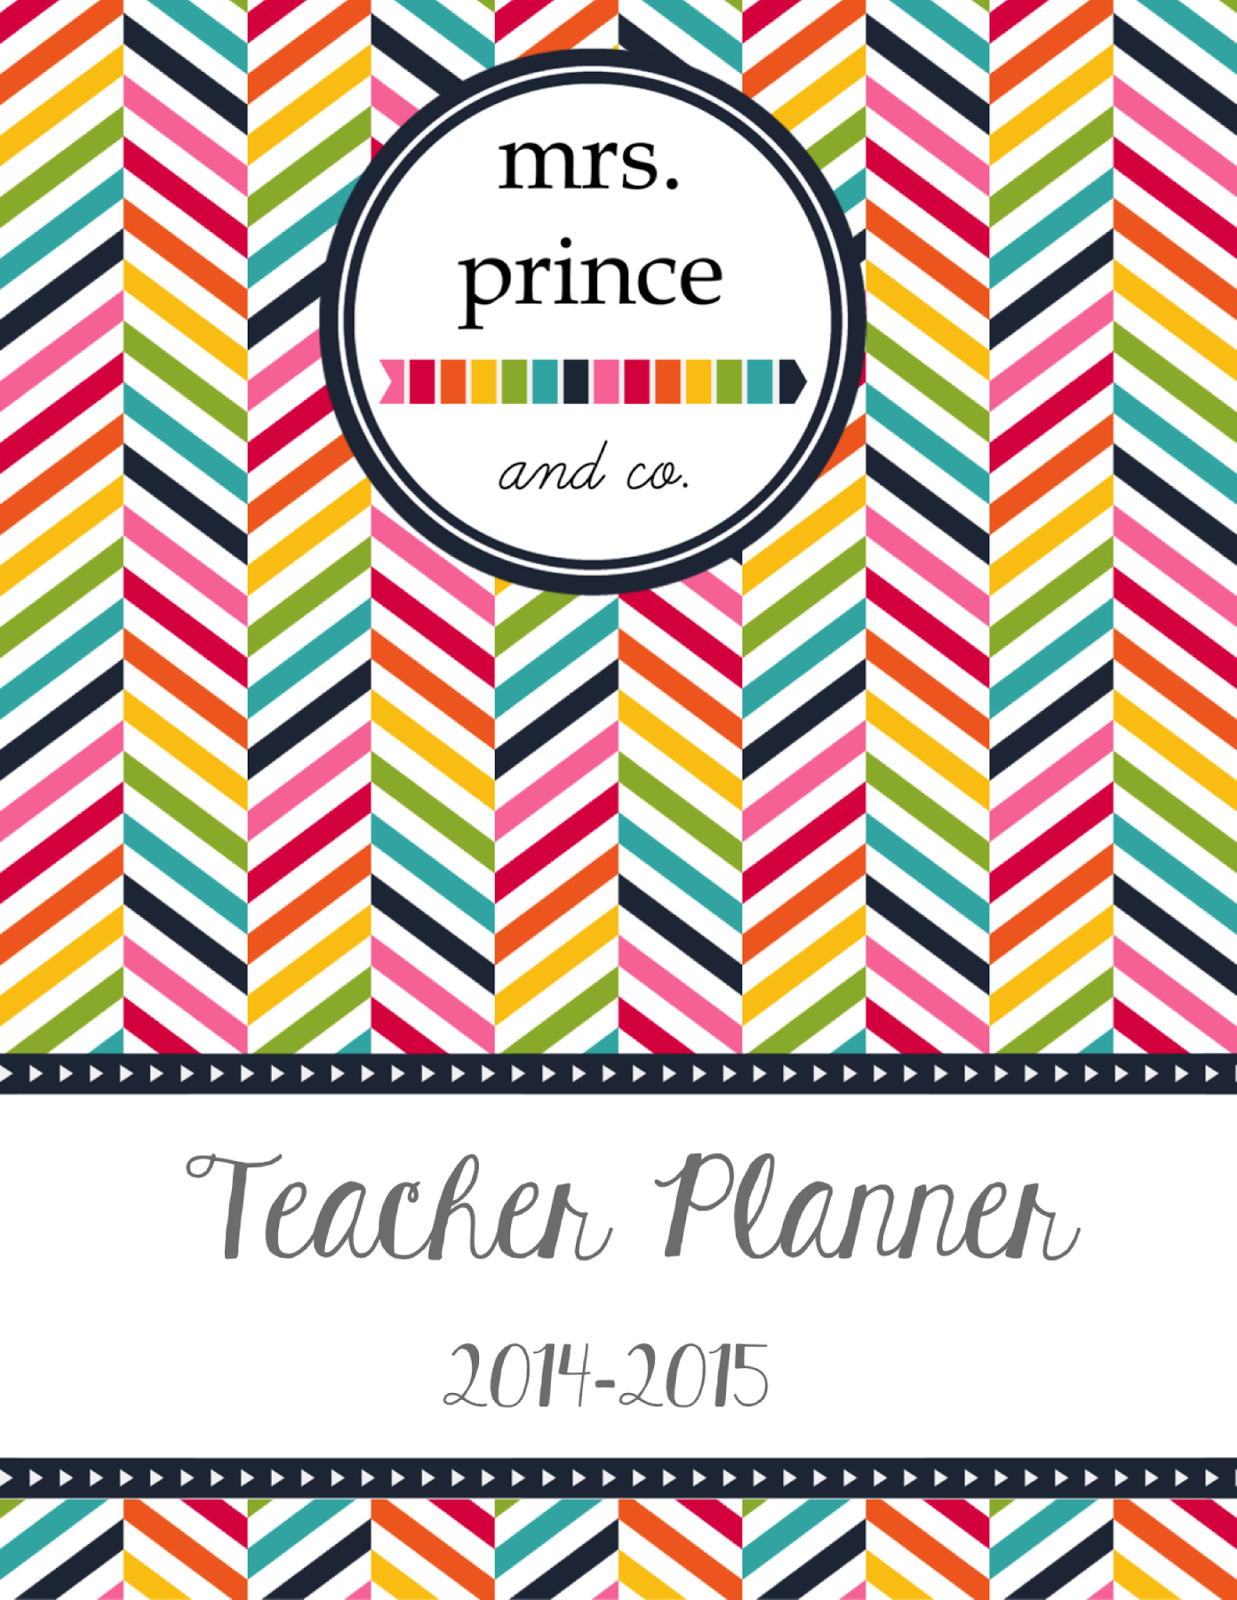 http://www.teacherspayteachers.com/Product/Teacher-Planner-2014-2015-1235392